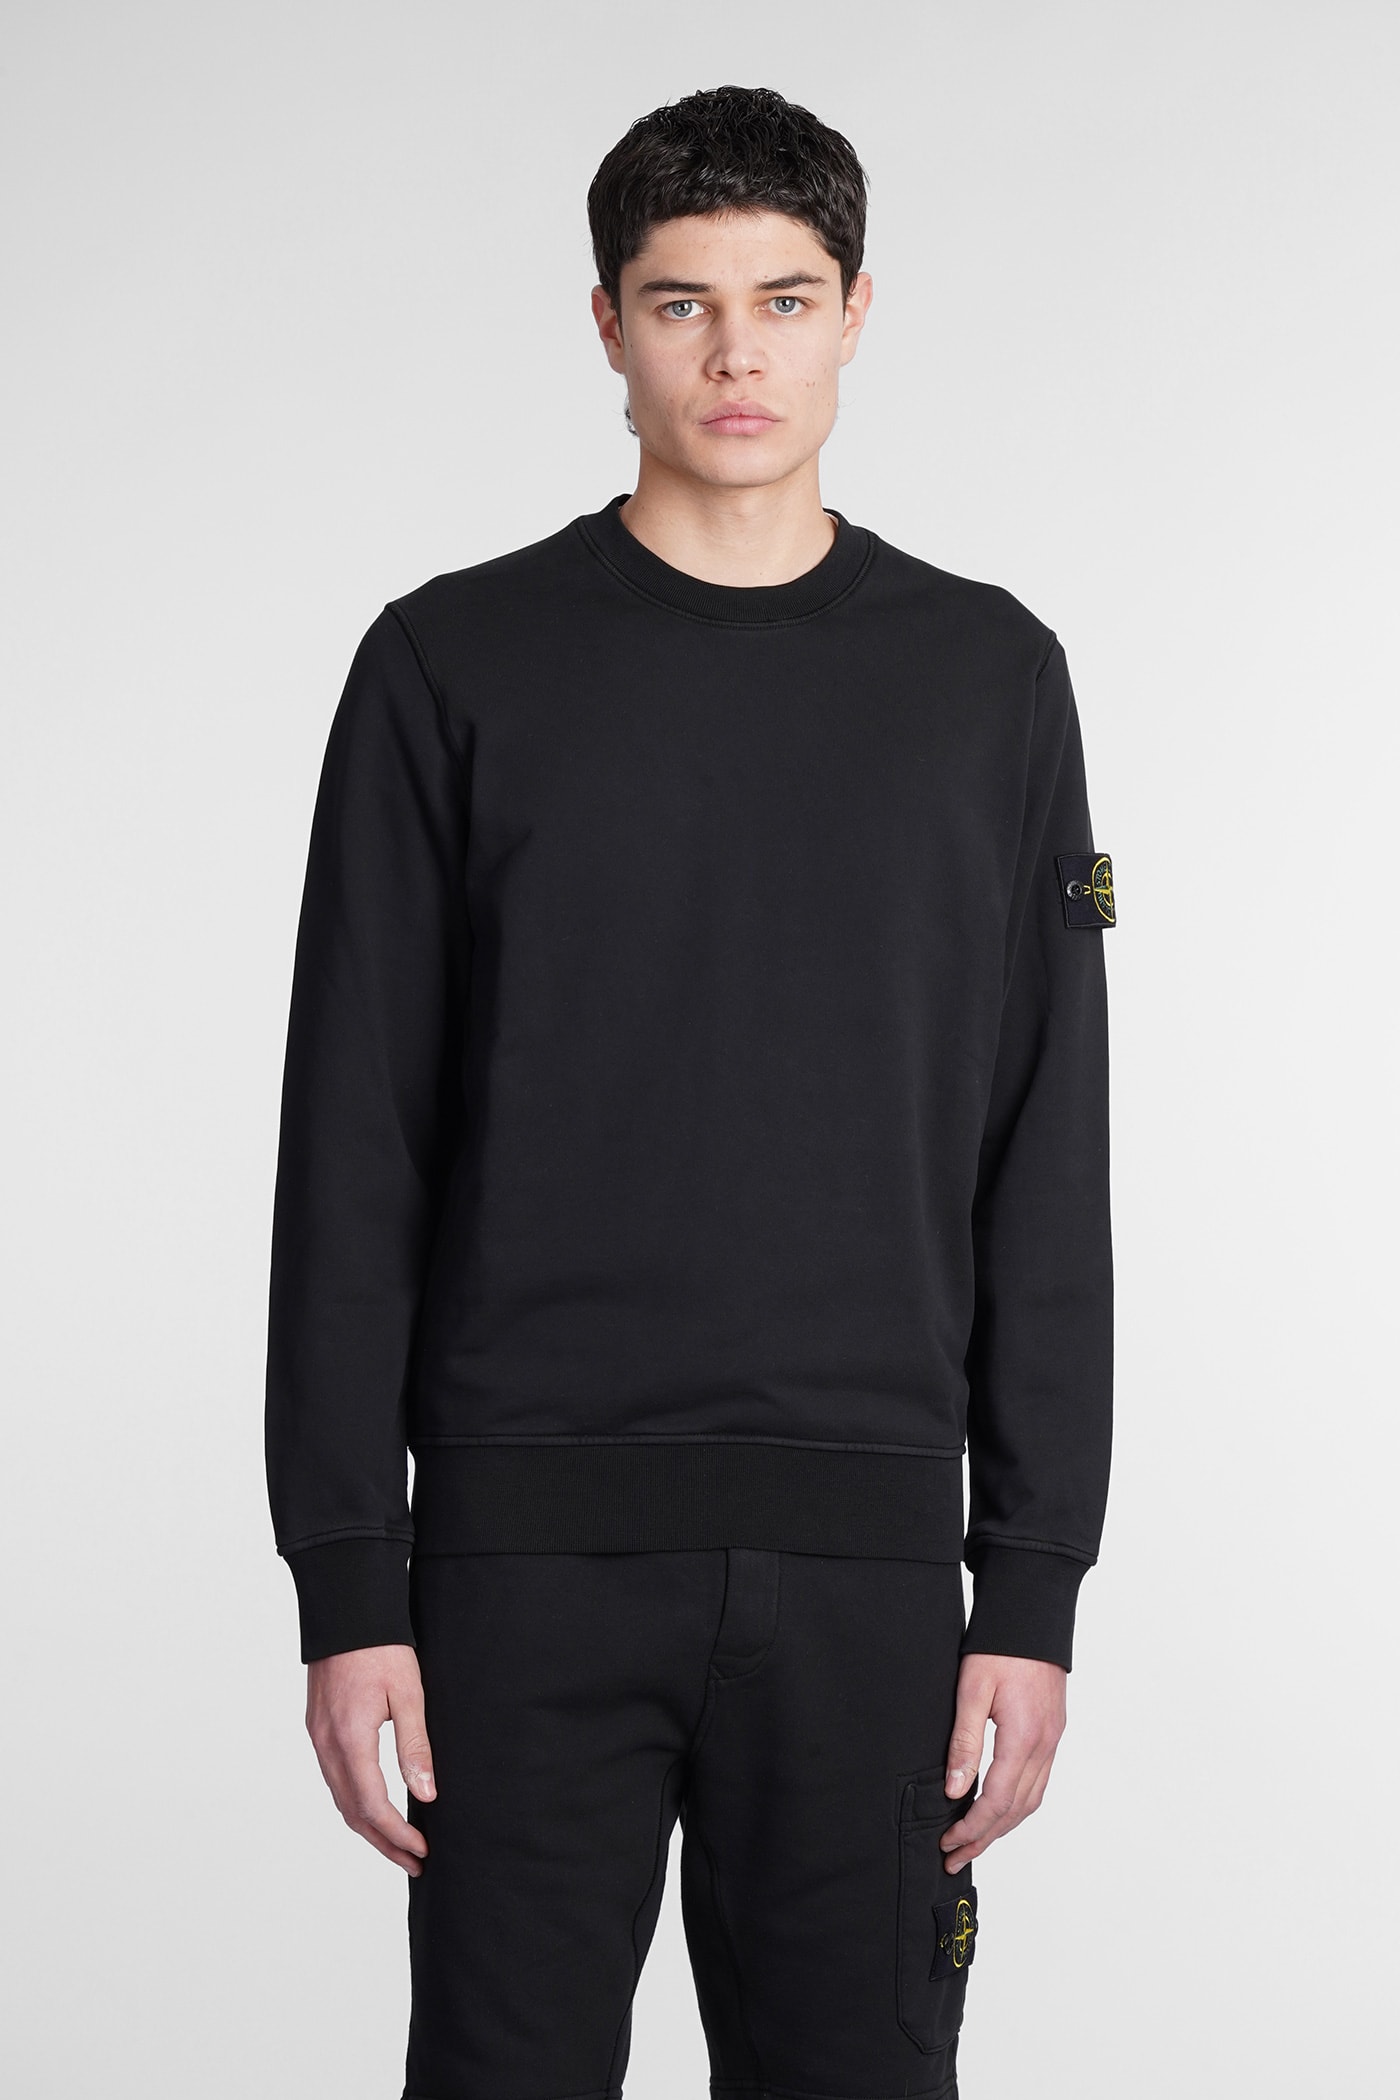 Stone Island Crewneck Sweatshirt Sweatshirt In Black | ModeSens